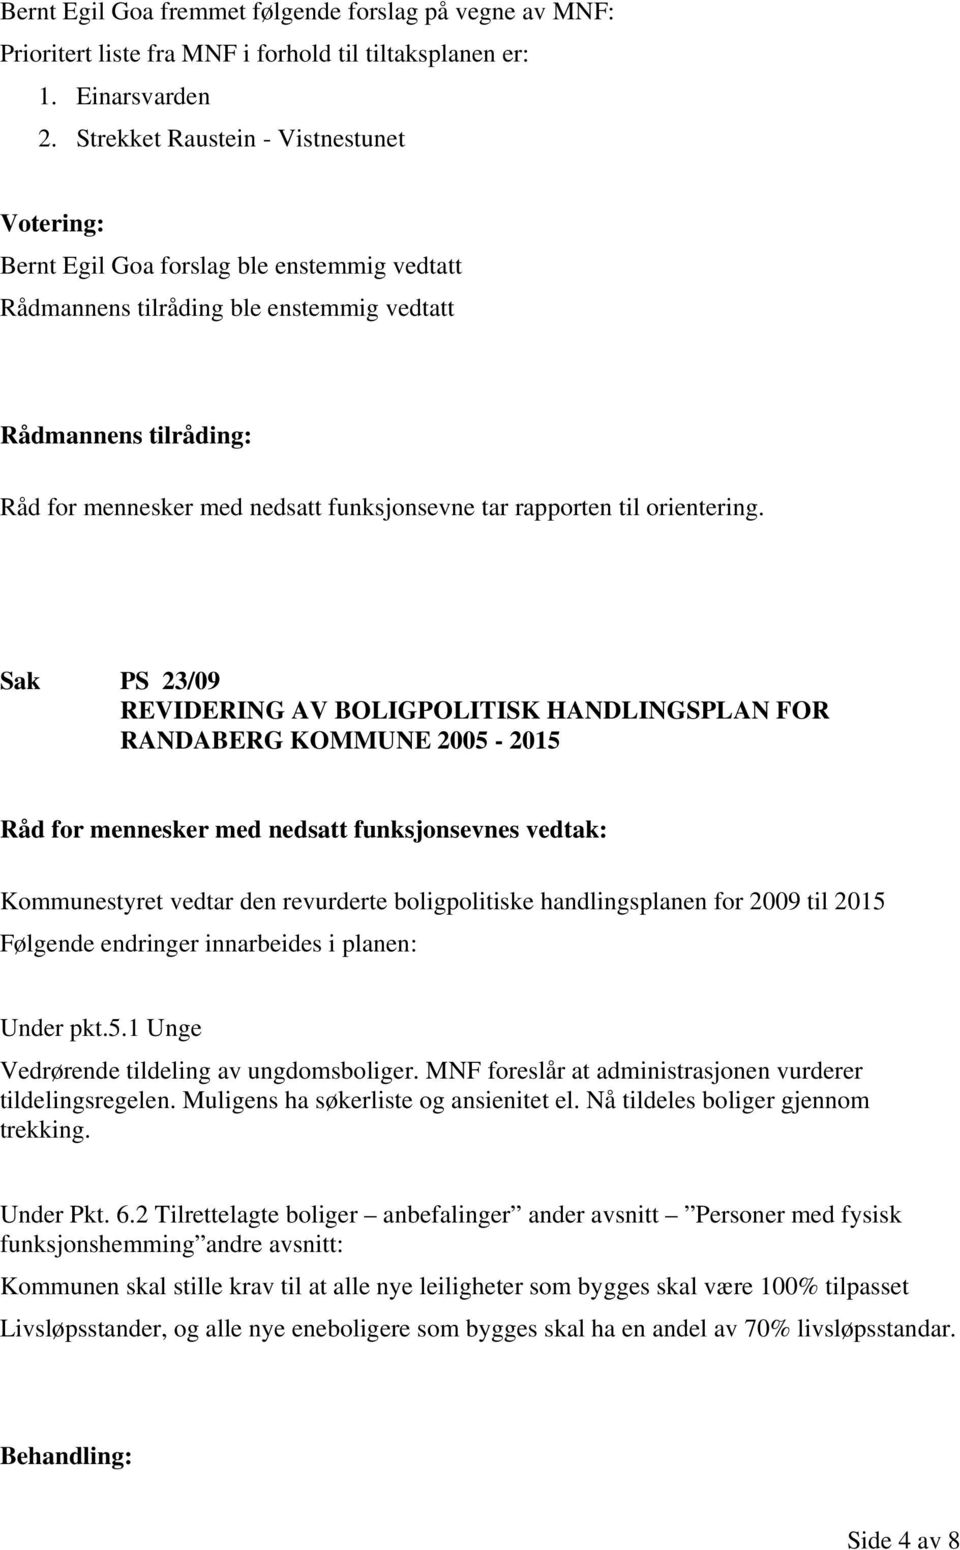 Sak PS 23/09 REVIDERING AV BOLIGPOLITISK HANDLINGSPLAN FOR RANDABERG KOMMUNE 2005-2015 Kommunestyret vedtar den revurderte boligpolitiske handlingsplanen for 2009 til 2015 Følgende endringer